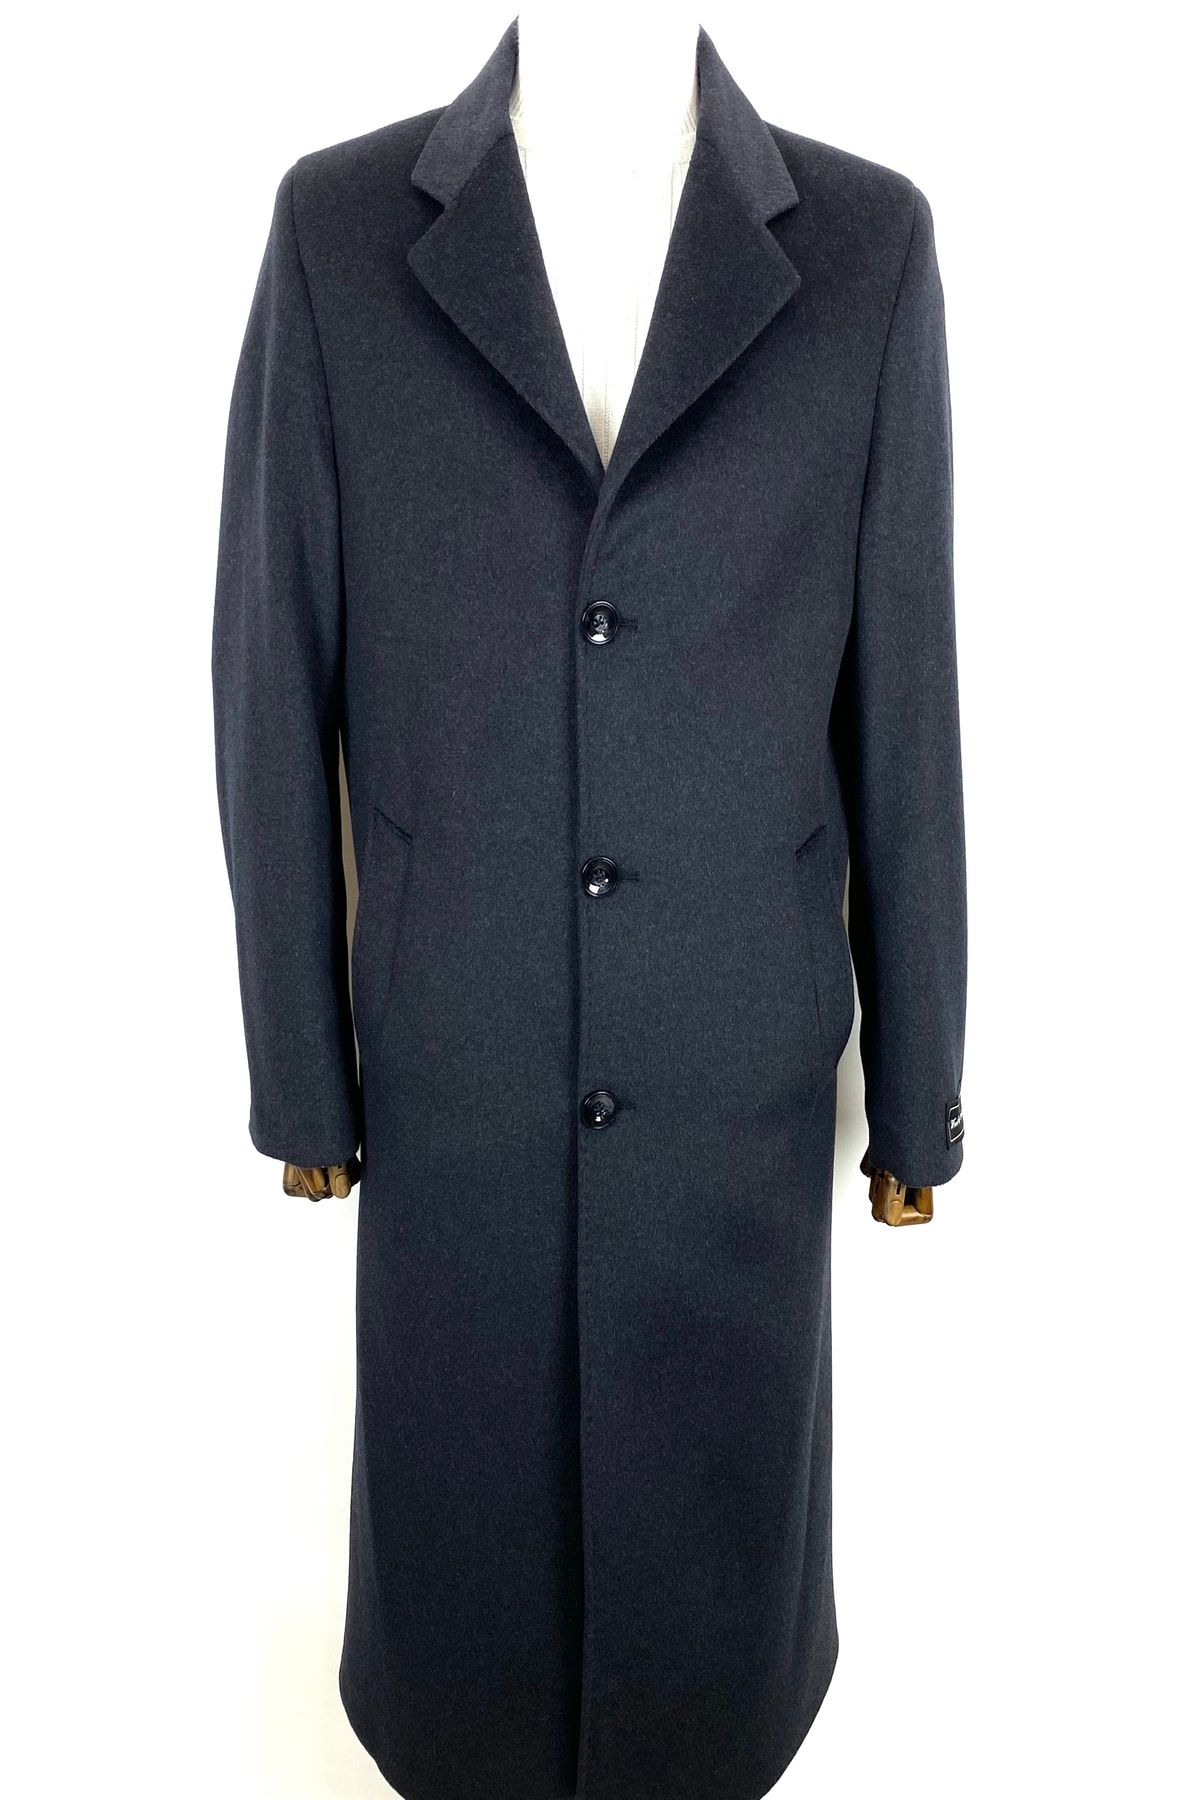 ŞAN GİYİM 1080 Erkek Antrasit Ceket Yaka Uzun Palto